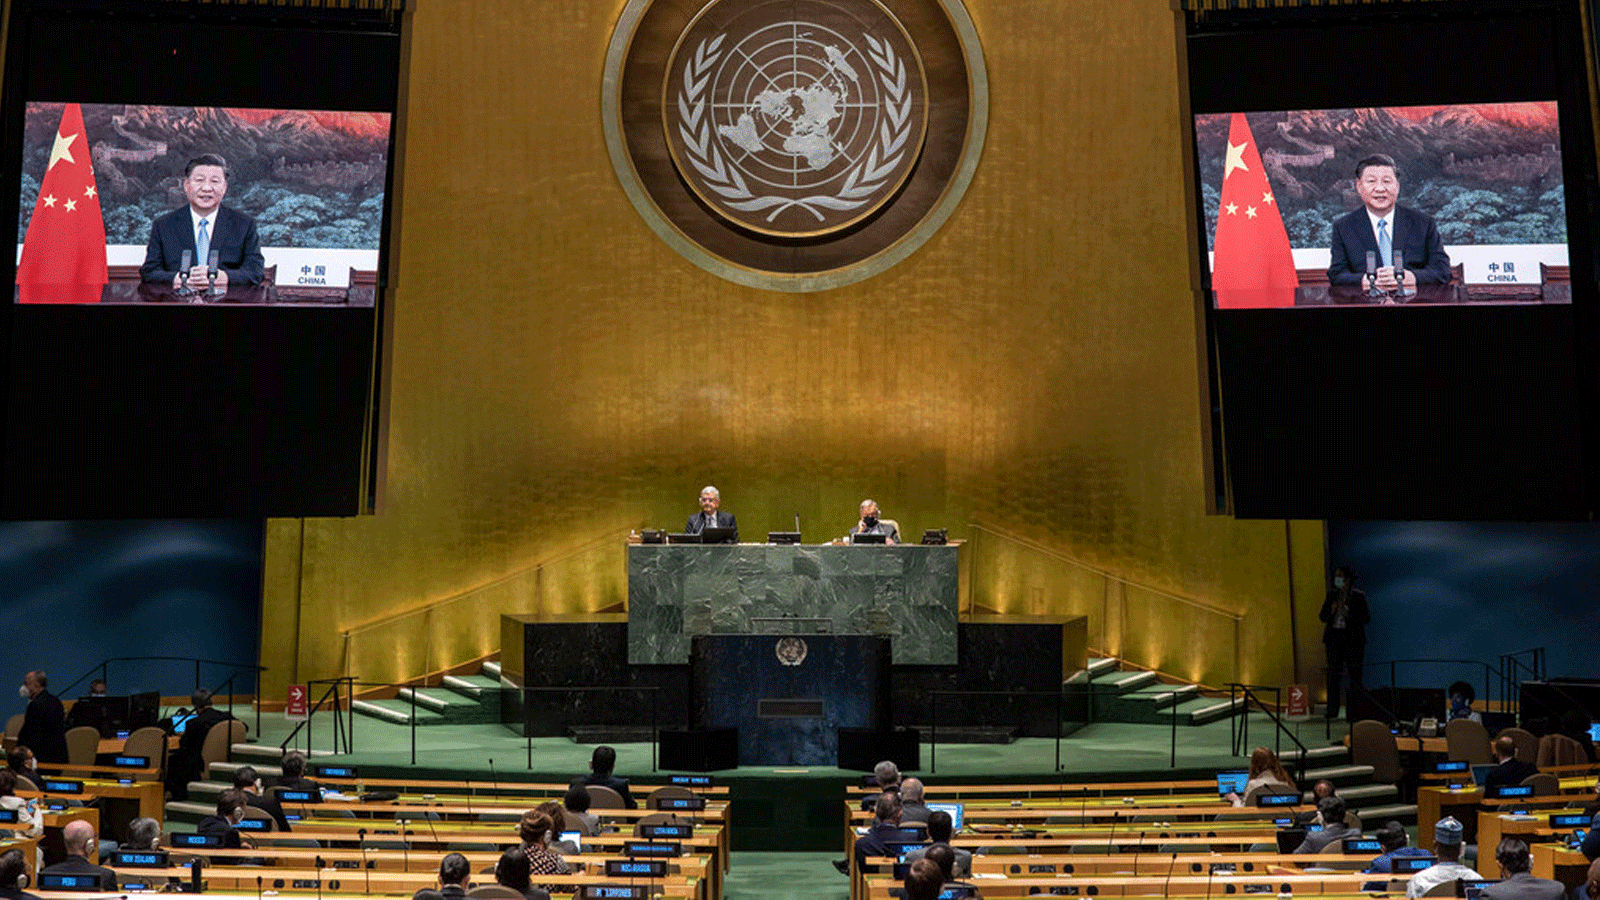 الرئيس الصيني شي جين بينغ يدعو إلى تعزيز التضامن الدولي لمكافحة فيروس كورونا خلال خطابه في الجمعية العامة للأمم المتحدة، معلنا أن بلاده ستهدف إلى أن تصبح محايدة للكربون، في المعركة الأوسع ضد تغير المناخ، بحلول عام 2060.22 أيلول/ سبتمبر 2021(صورة من صفحة الأمم المتحدة)